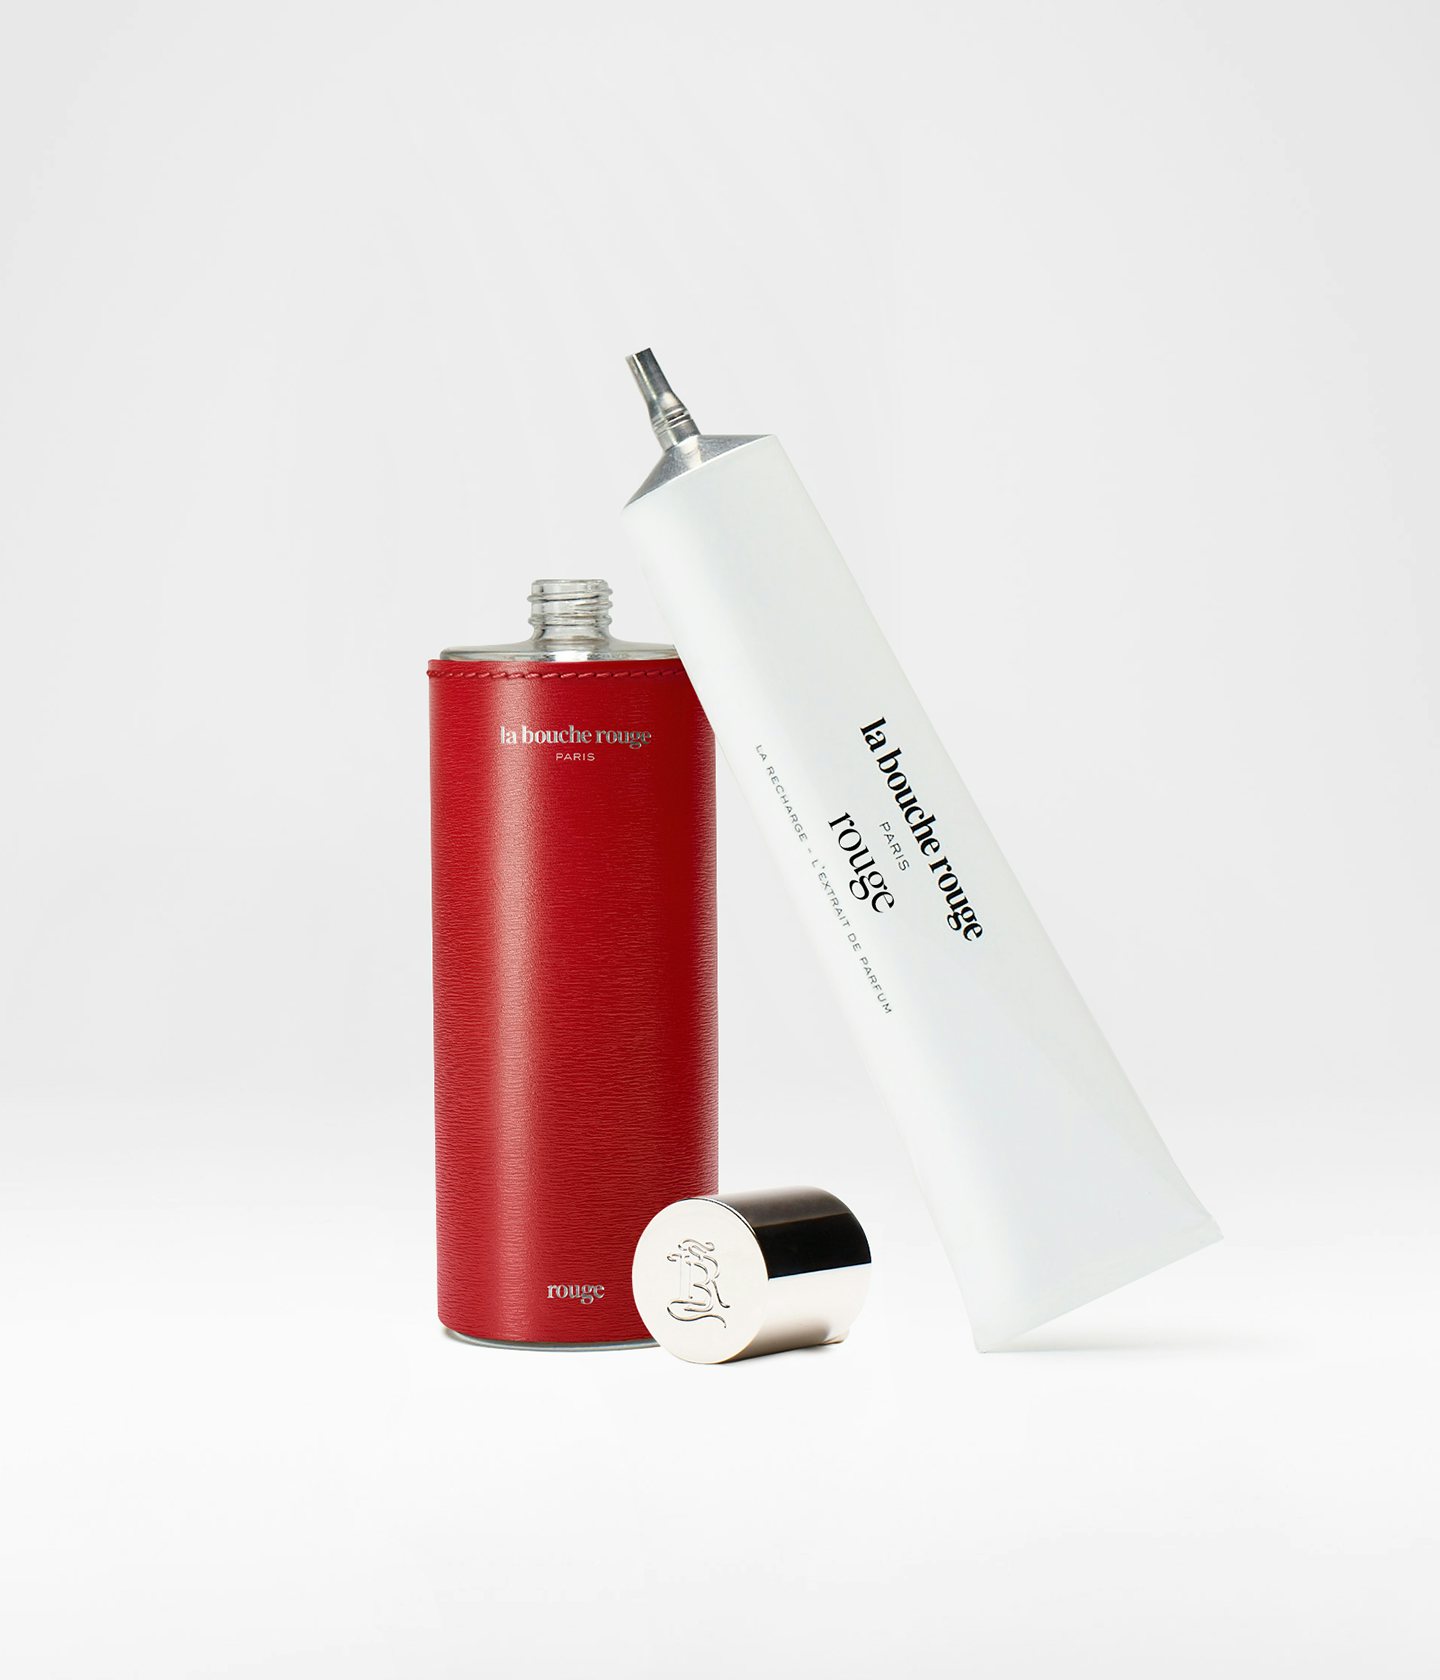 La bouche rouge Extrait de Parfum Rouge dans un écrin en cuir rouge et la recharge en aluminium